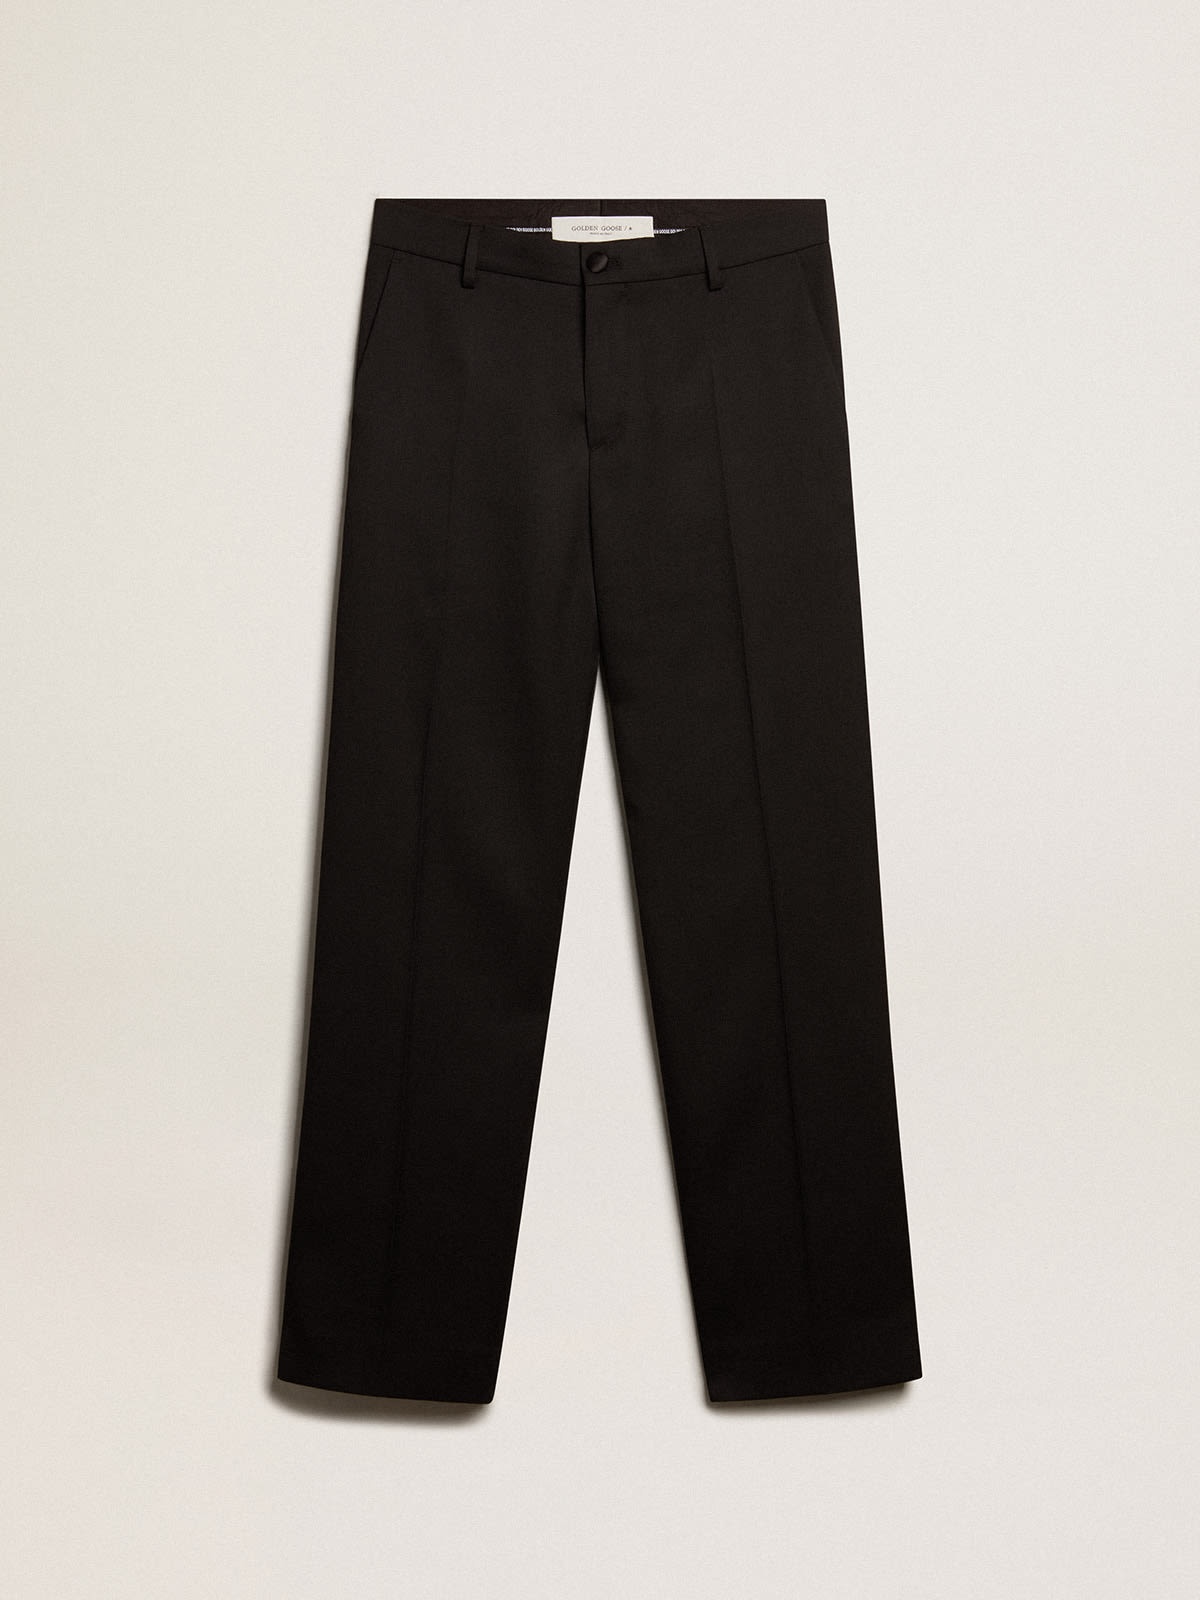 Men’s tuxedo pants in black wool gabardine - 1